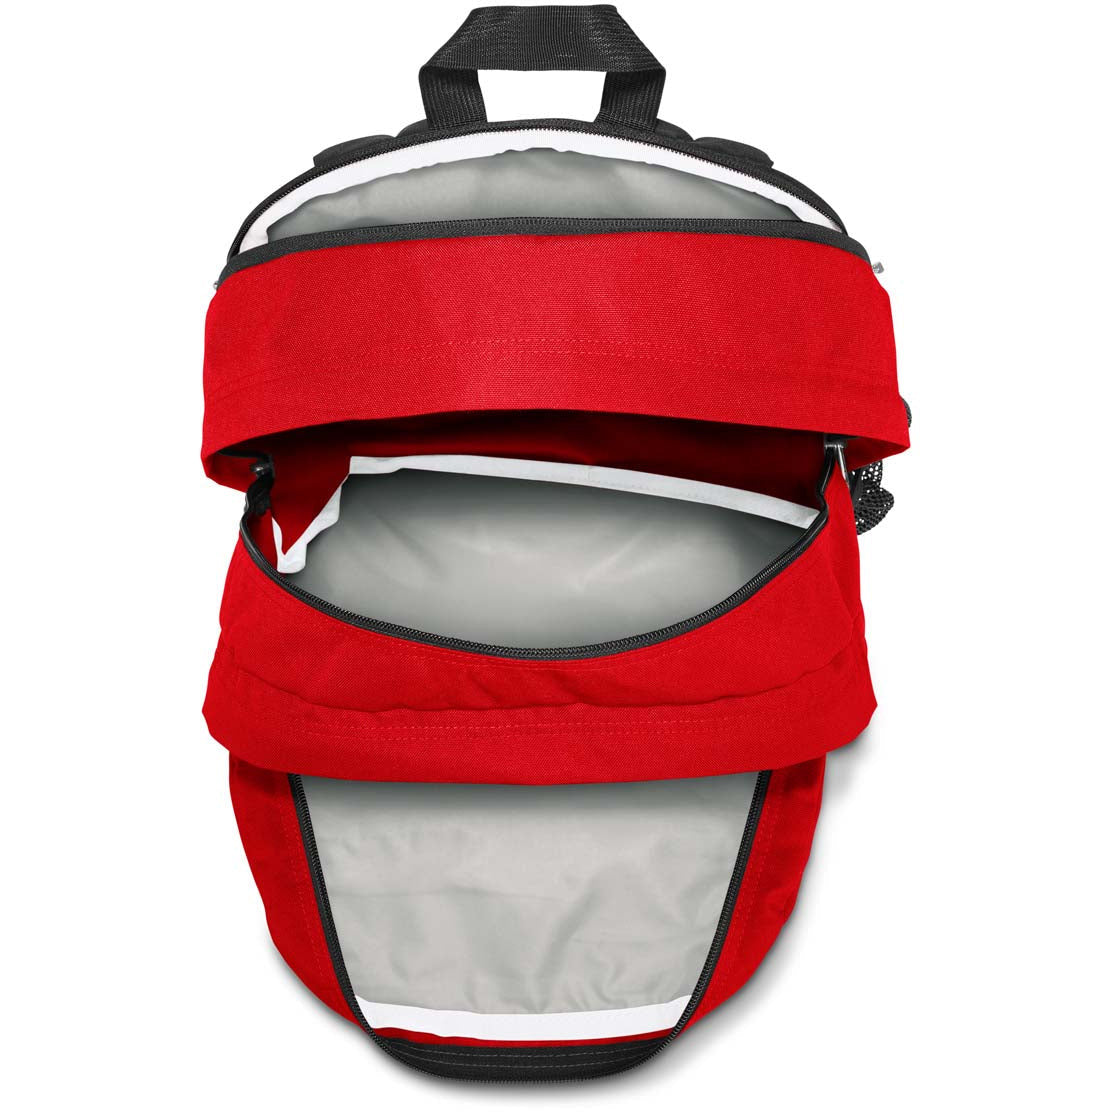 JanSport Big Student Backpack - Red Tape